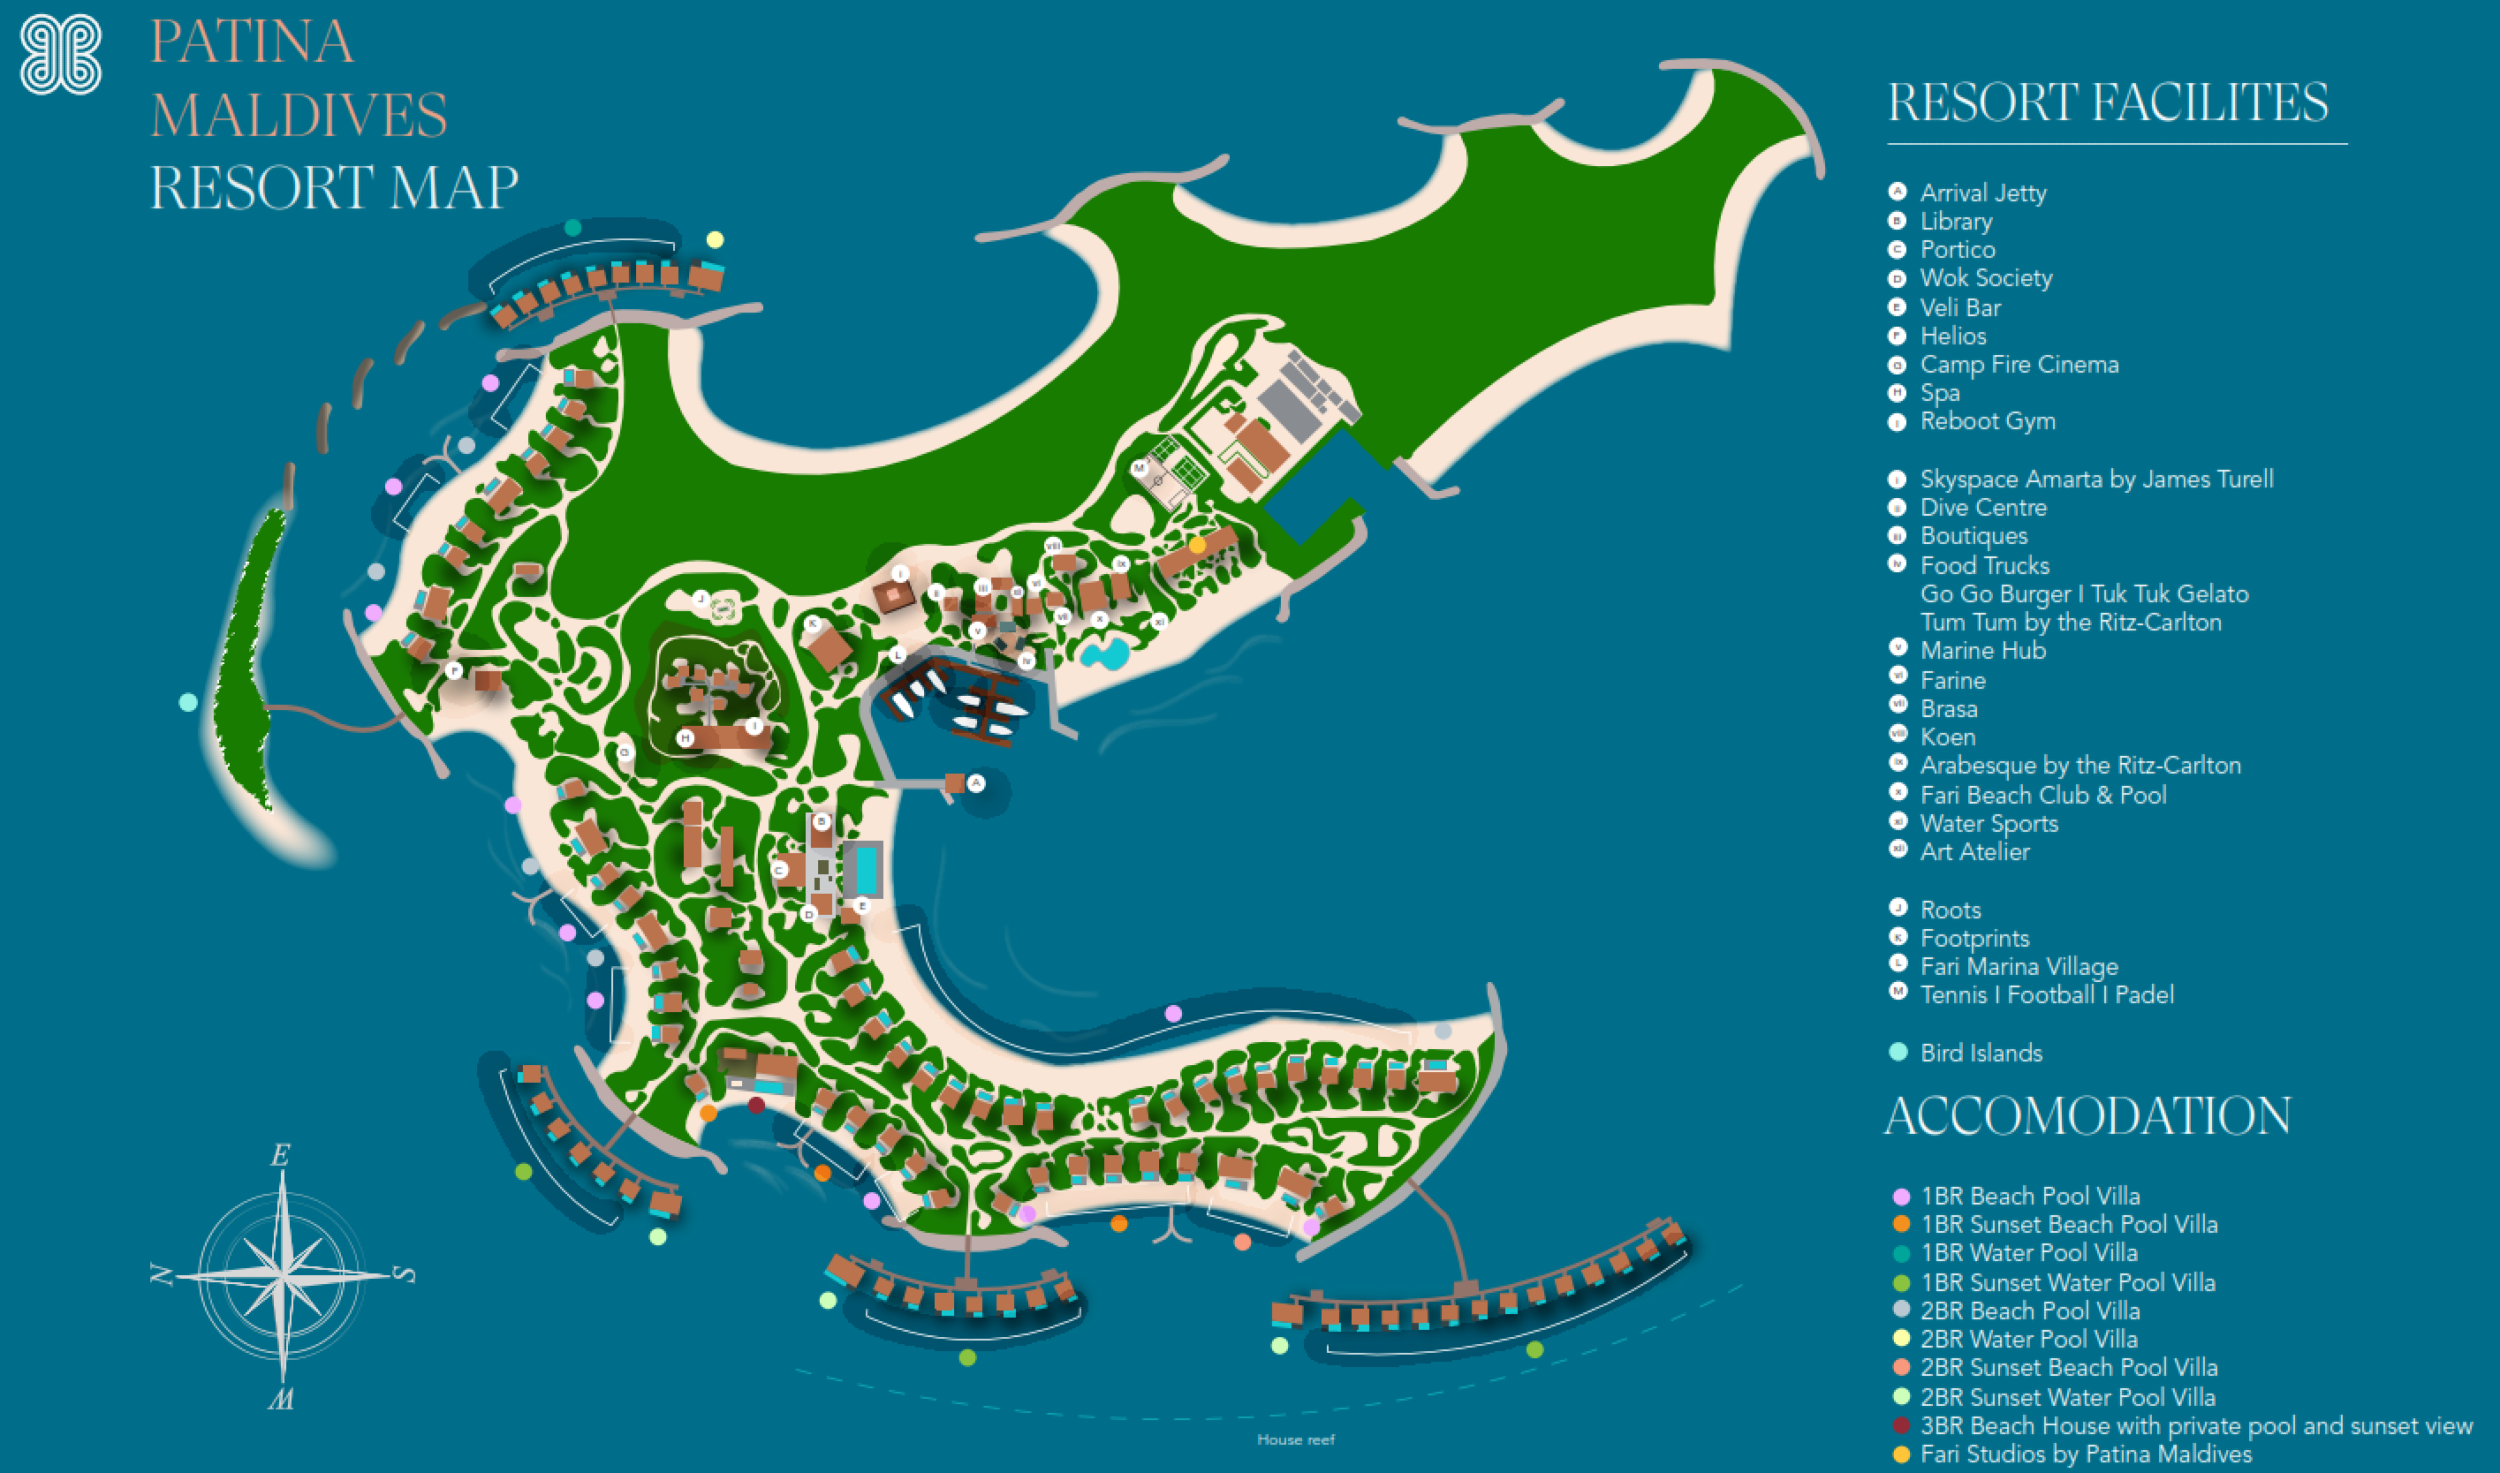 Patina Maldives - Resort Map